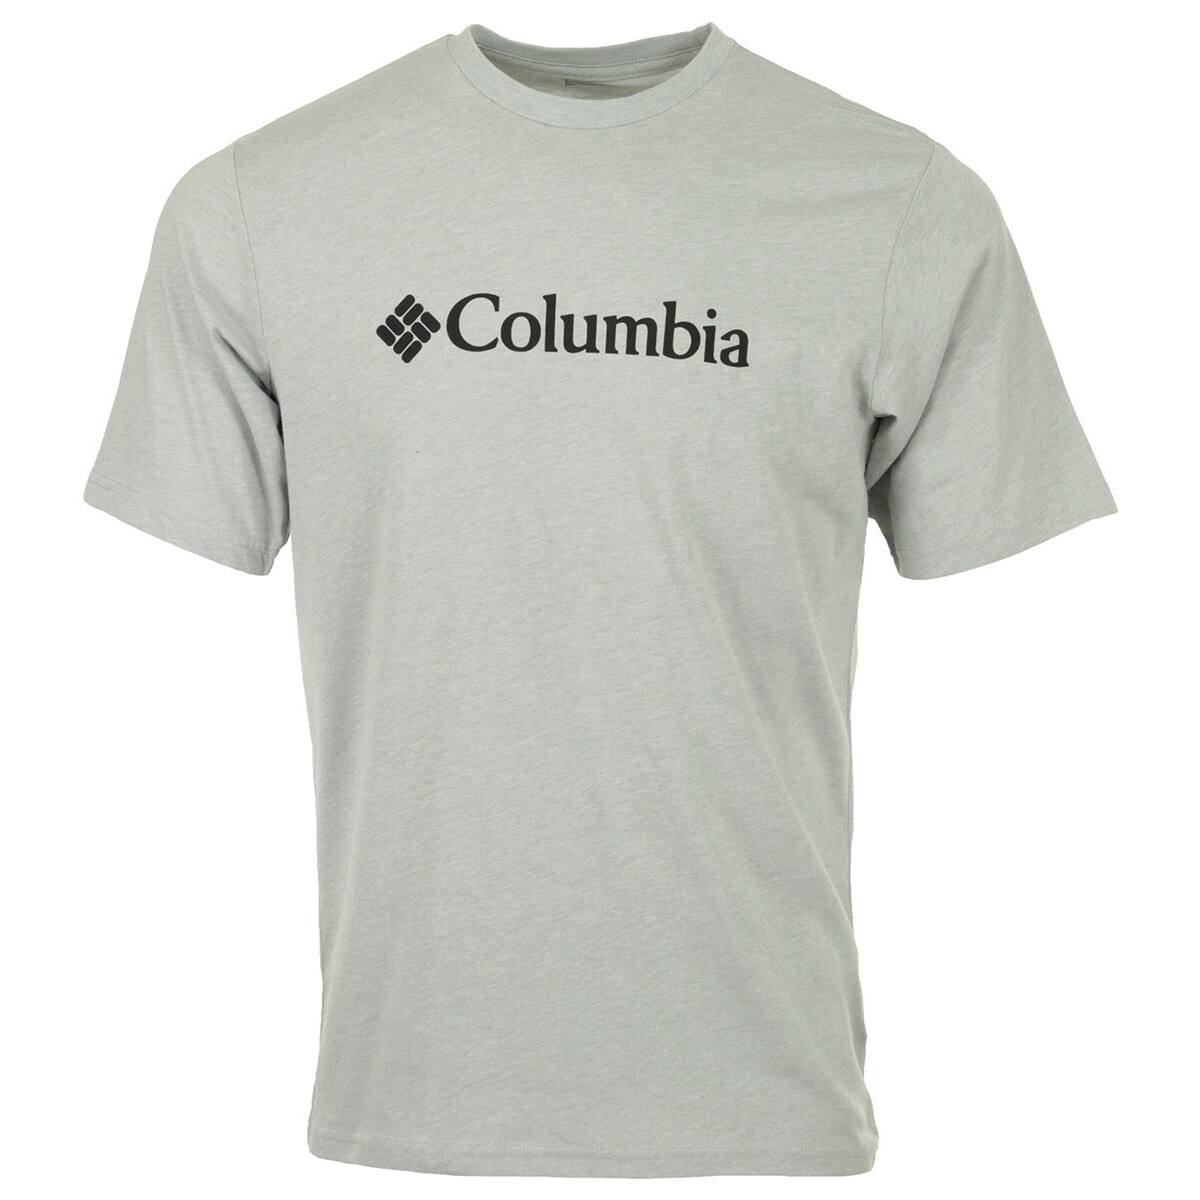 Vêtements Homme T-shirts manches courtes Columbia CSC Basic Logo Gris